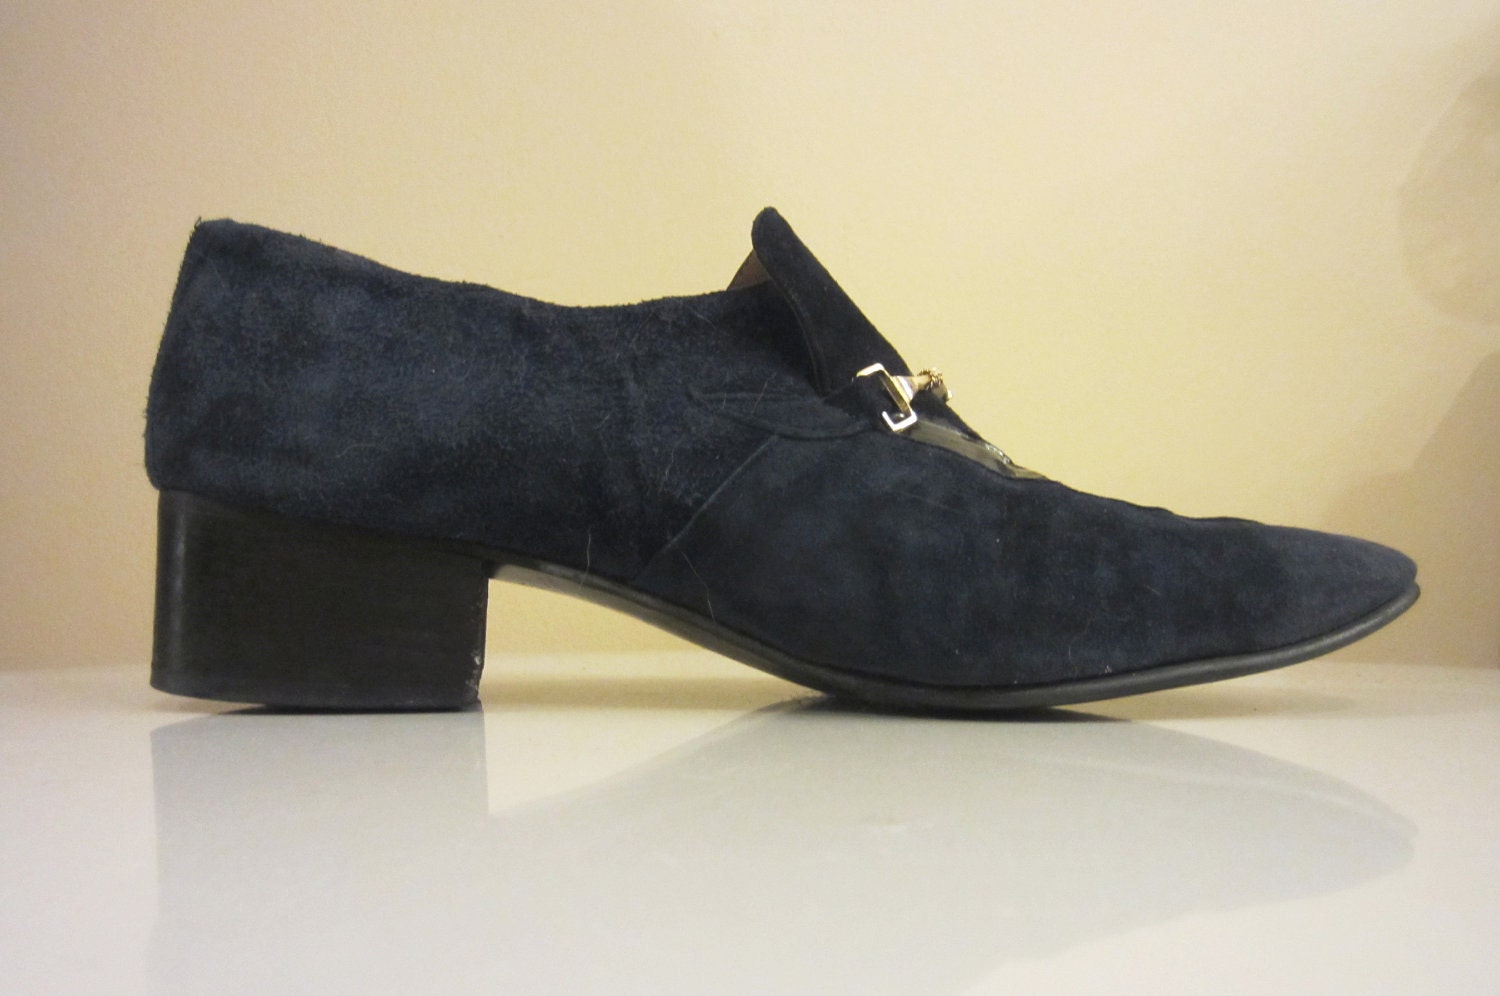 Vintage 1970s Men's Blue Suede Shoes